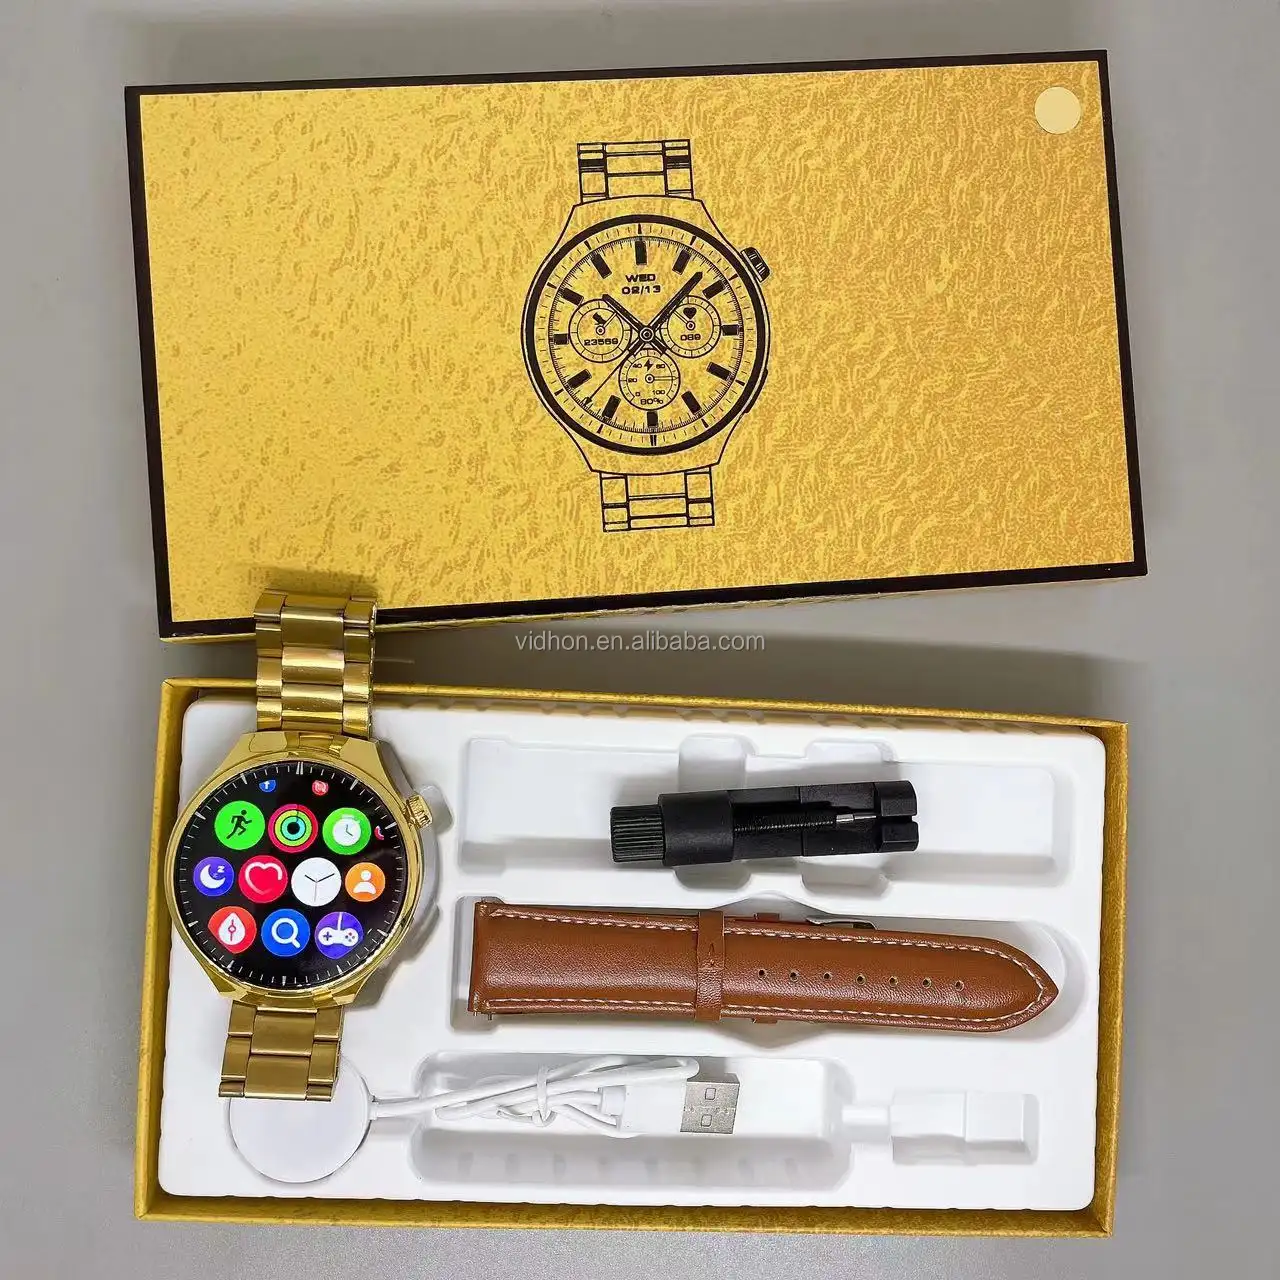 Montre intelligente de luxe 1.52 "montre dorée pour homme étanche reloj inteligente faible consommation de batterie watch4pro montre intelligente